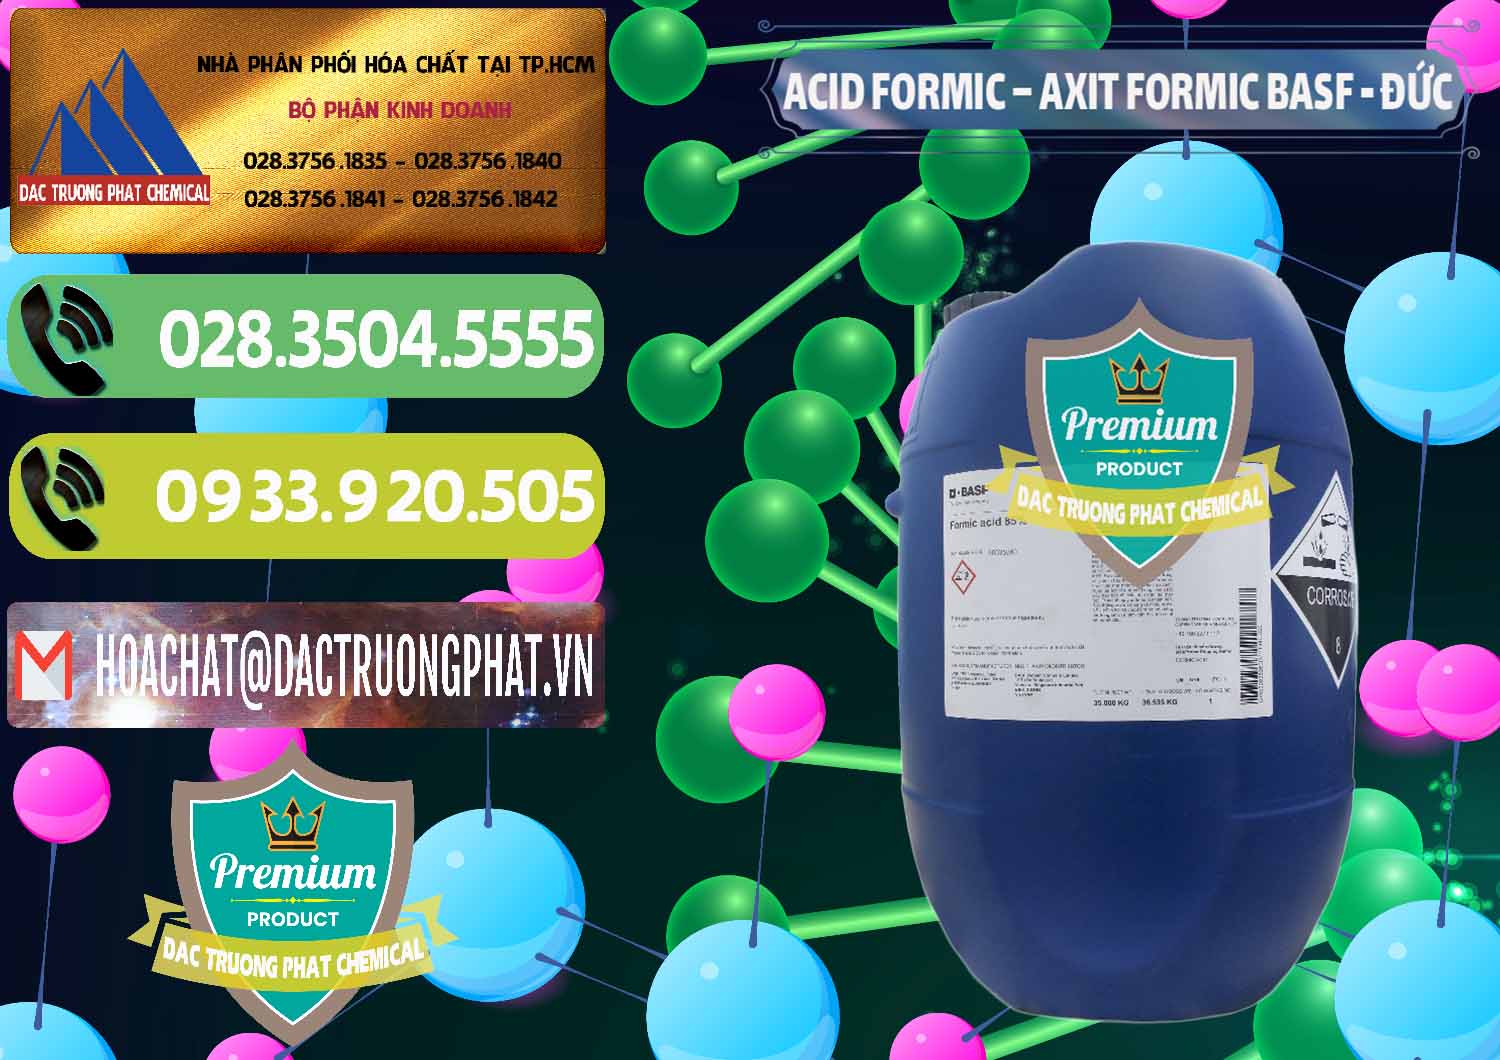 Cty chuyên cung cấp _ bán Acid Formic - Axit Formic BASF Đức Germany - 0028 - Cty cung ứng ( phân phối ) hóa chất tại TP.HCM - hoachatmientay.vn